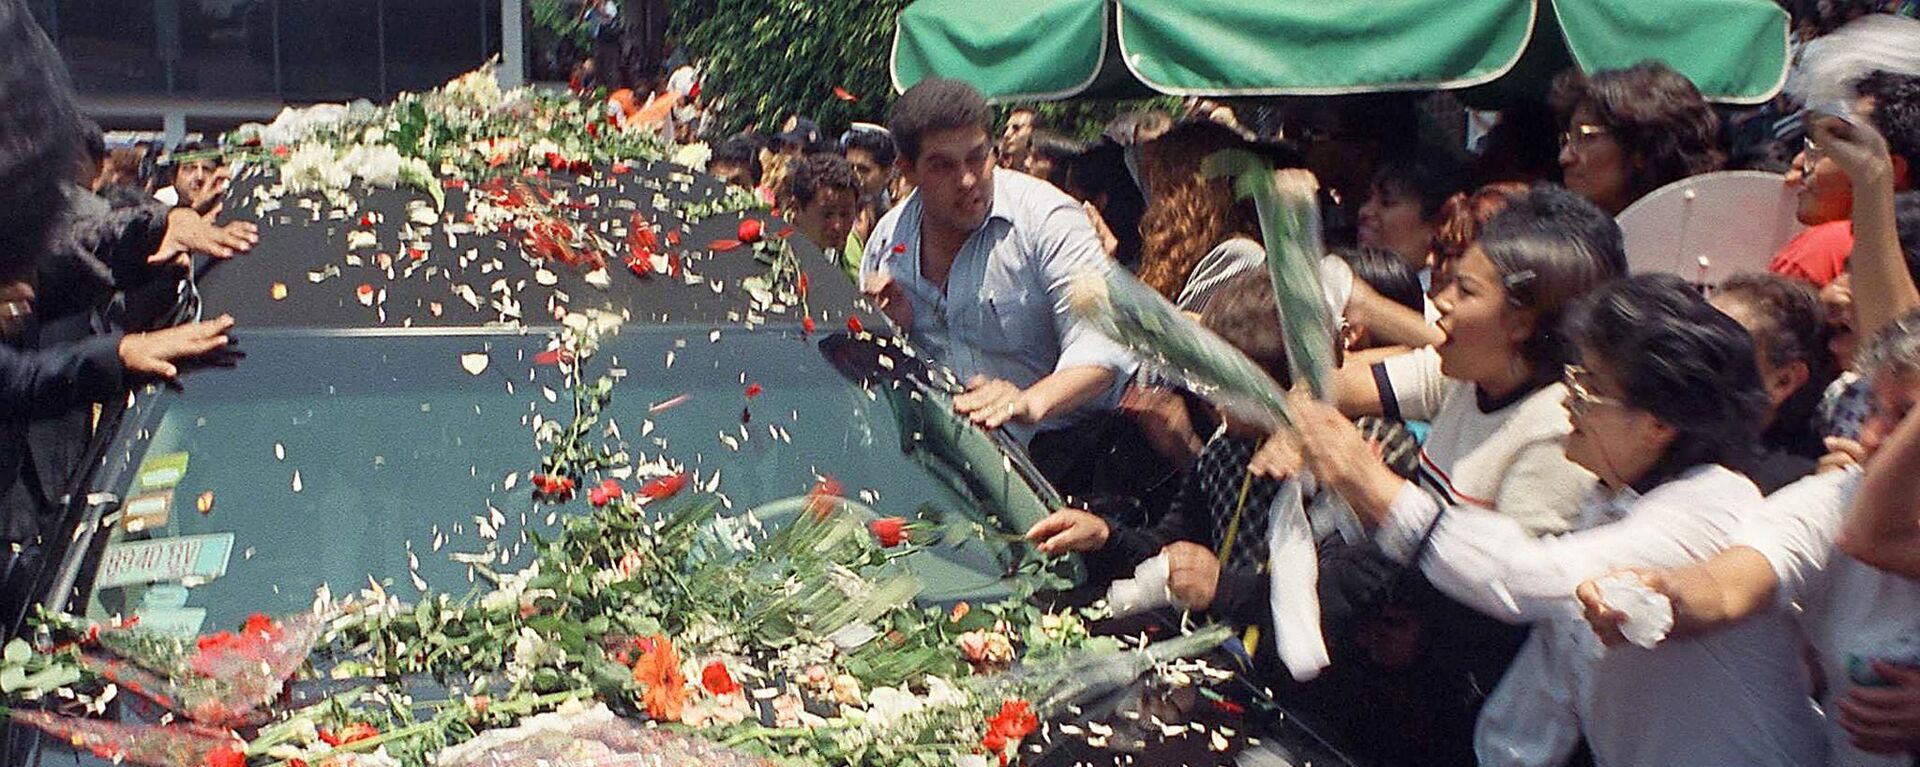 Seguidores de Francisco Paco Stanley arrojan flores en su carro fúnebre durante su funeral, el 8 de junio de 1999 en Ciudad de México - Sputnik Mundo, 1920, 06.06.2019